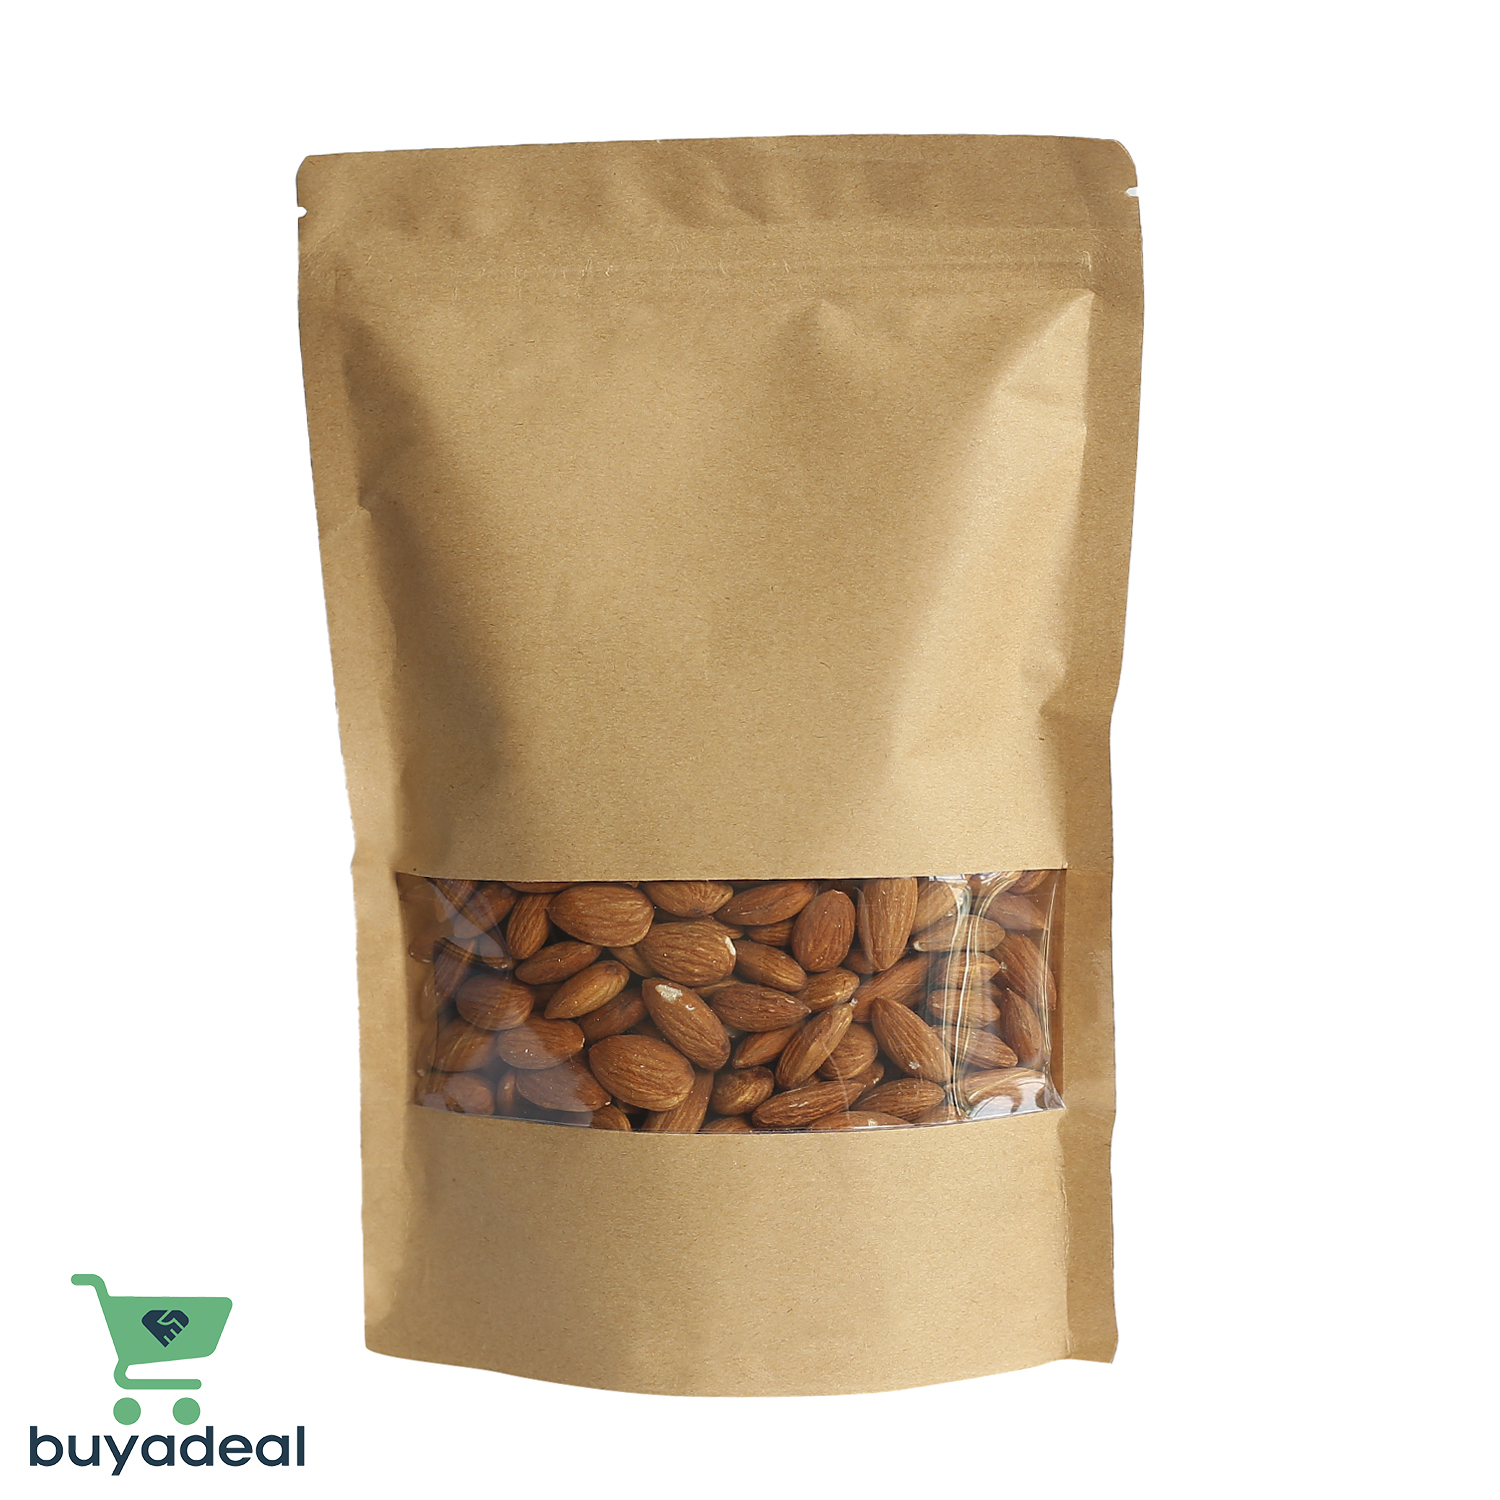 Buyadeal Product California Almonds 100g